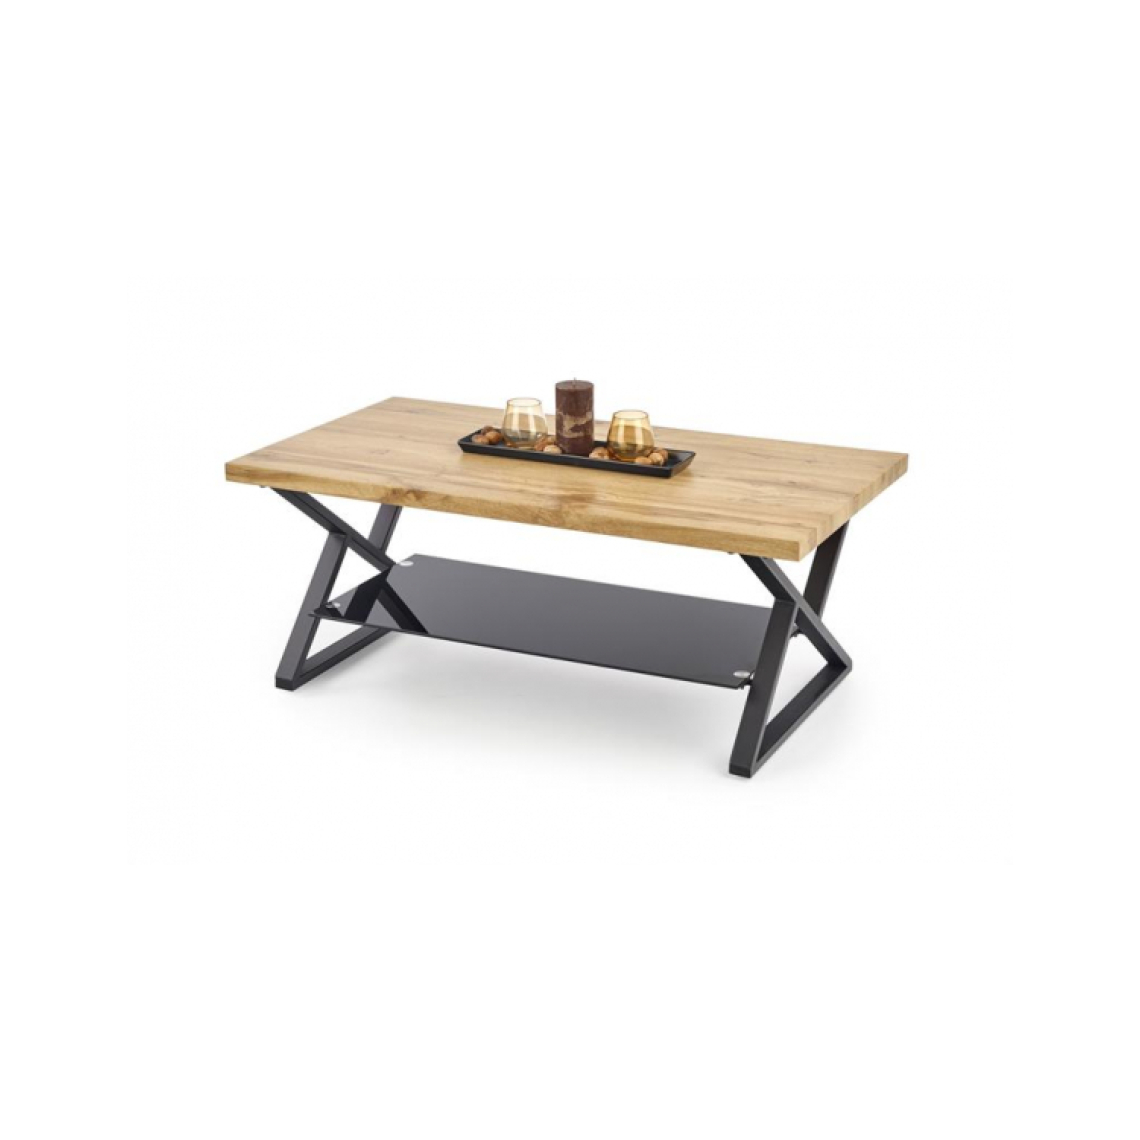 Carellia - Table basse rectangulaire 110 cm x 60 cm x 45 cm - Chêne naturel/Noir - Tables basses